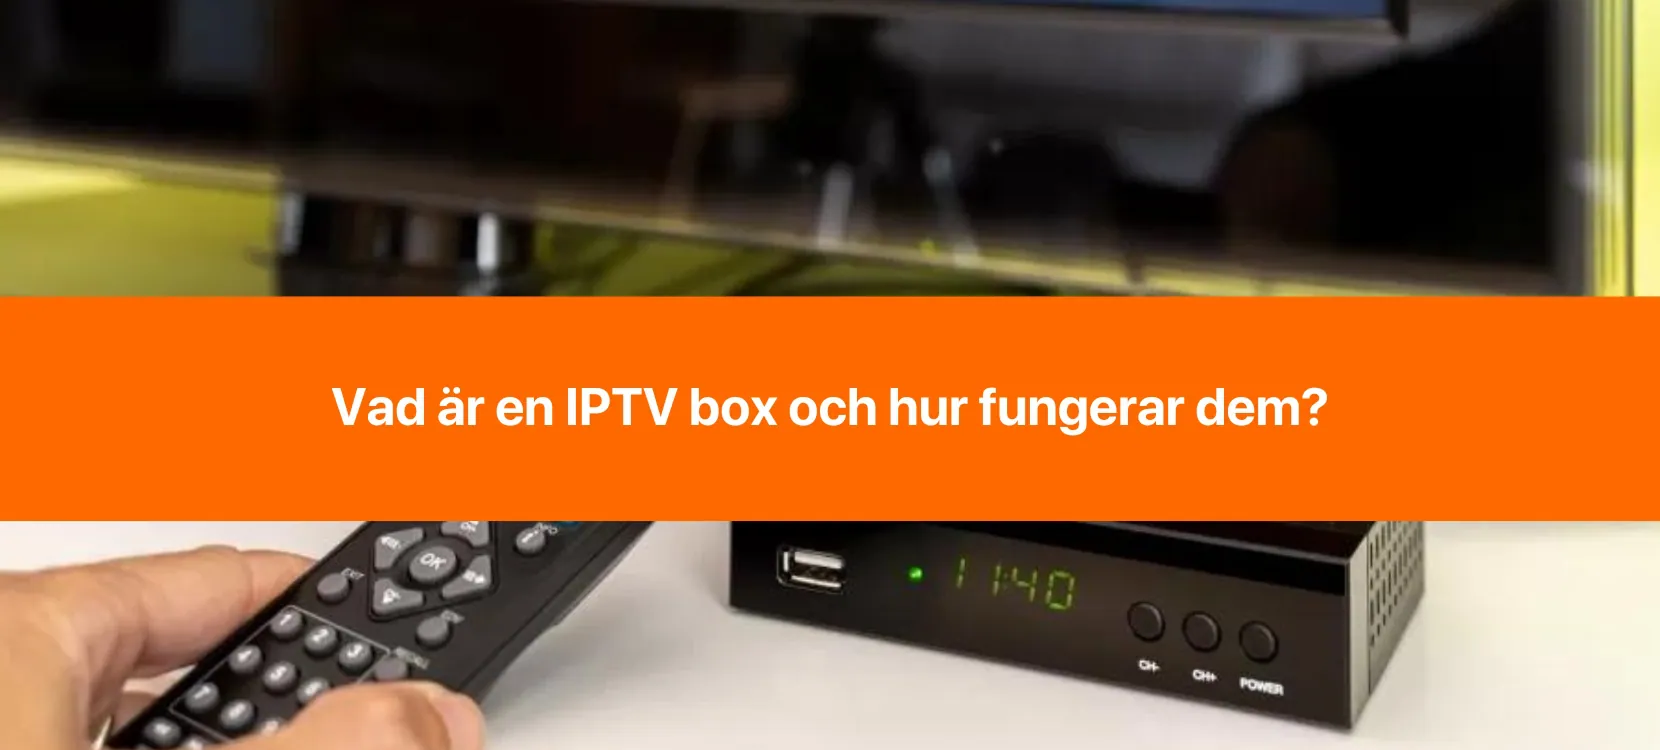 Bakgrund med en tv och en webb-tv box för digital-tv med en orange linje med texten 